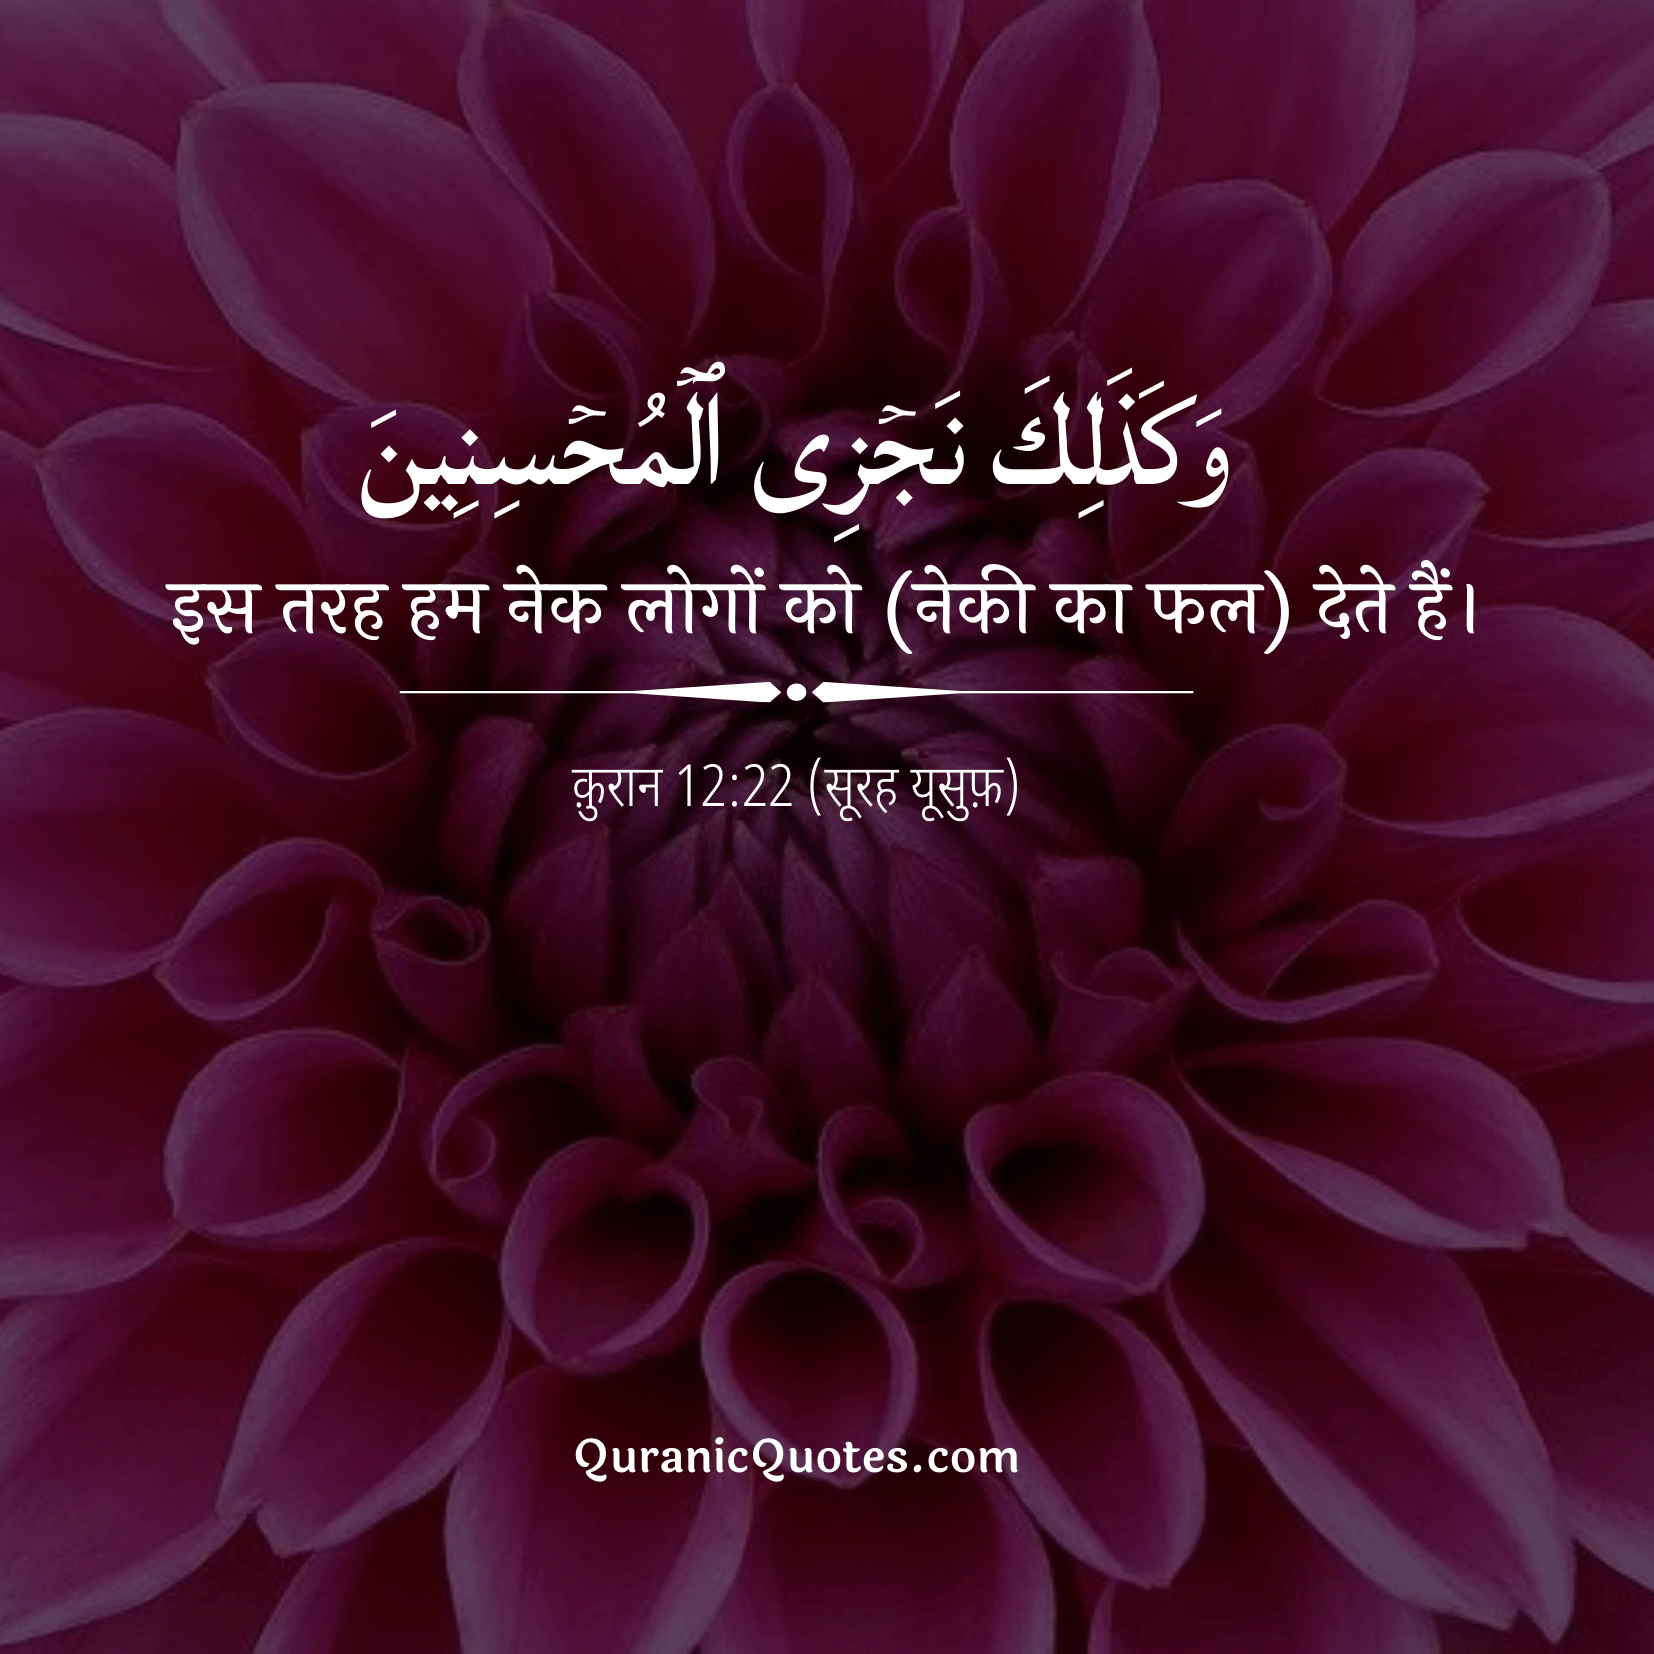 Quranic Quotes Hindi #192Quranic Quotes Hindi #210